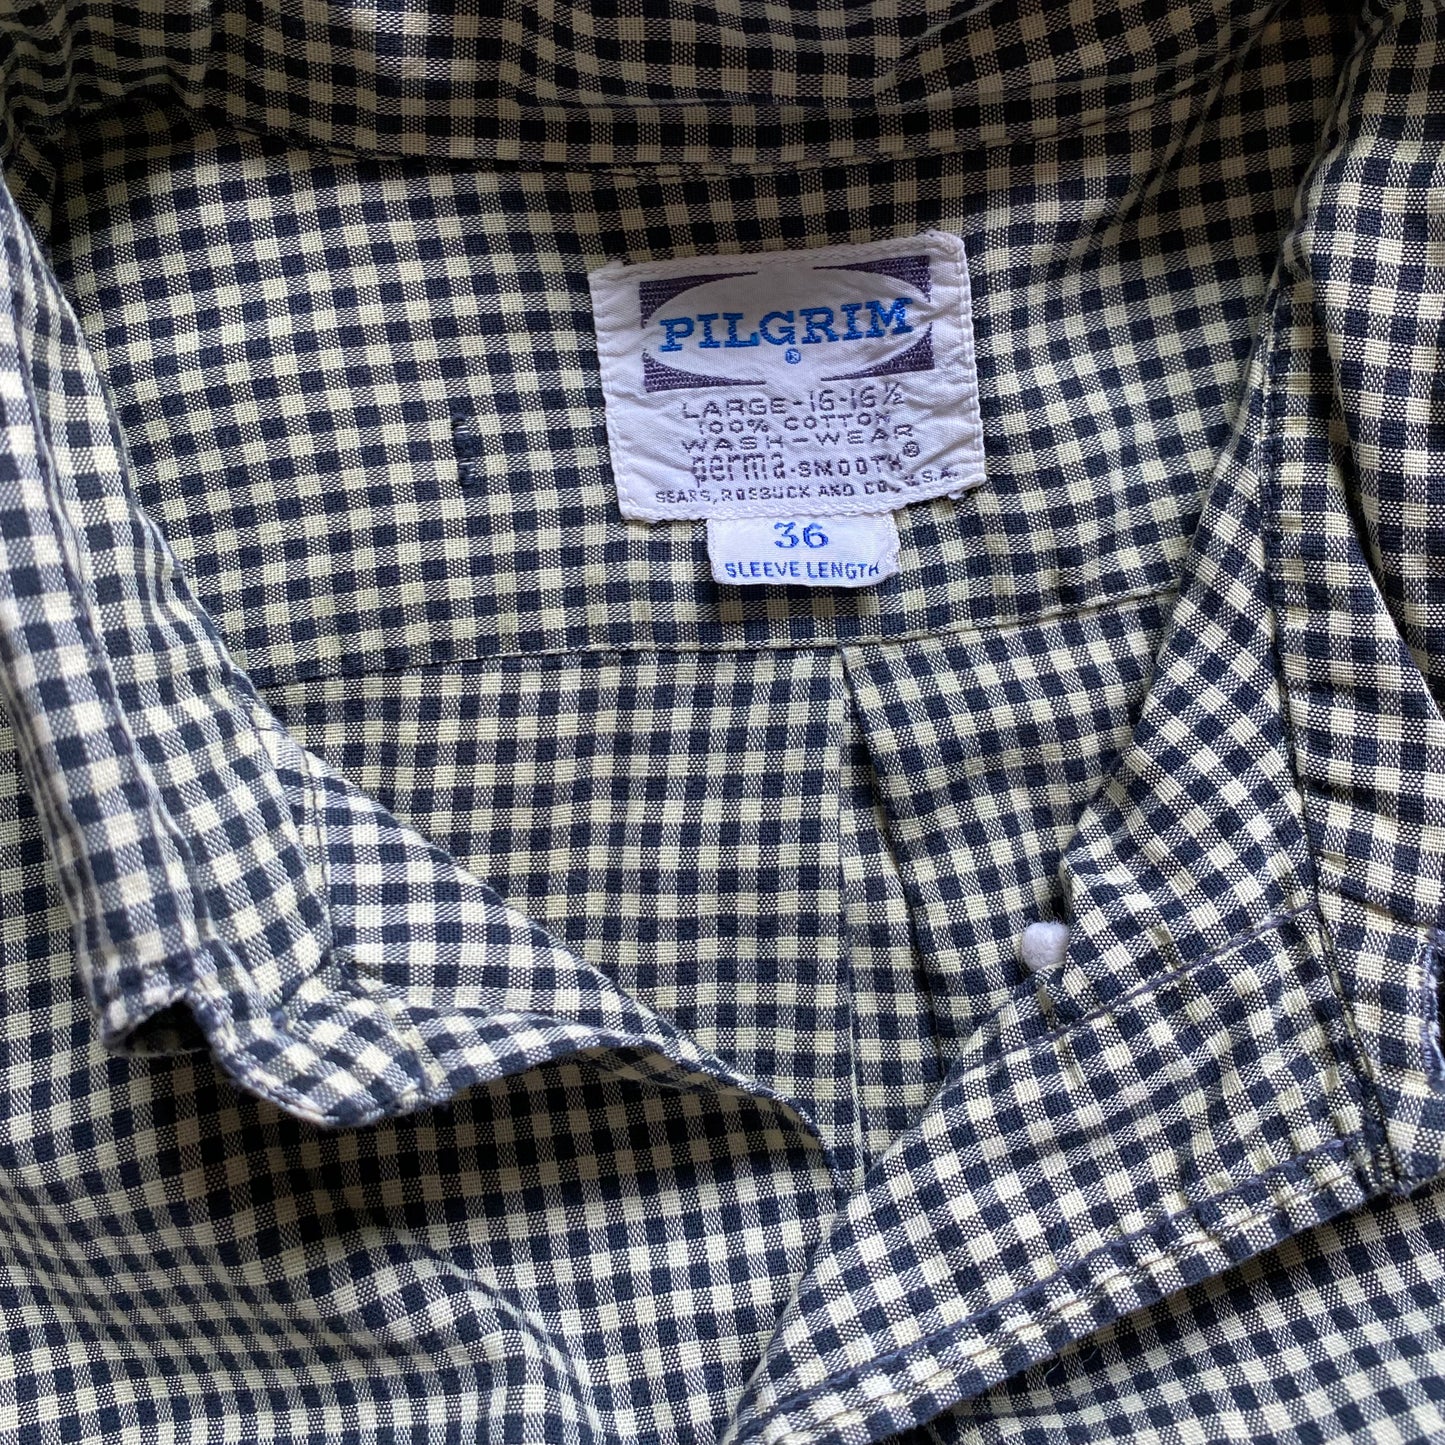 Sears PILGRIM check Botandown shirt